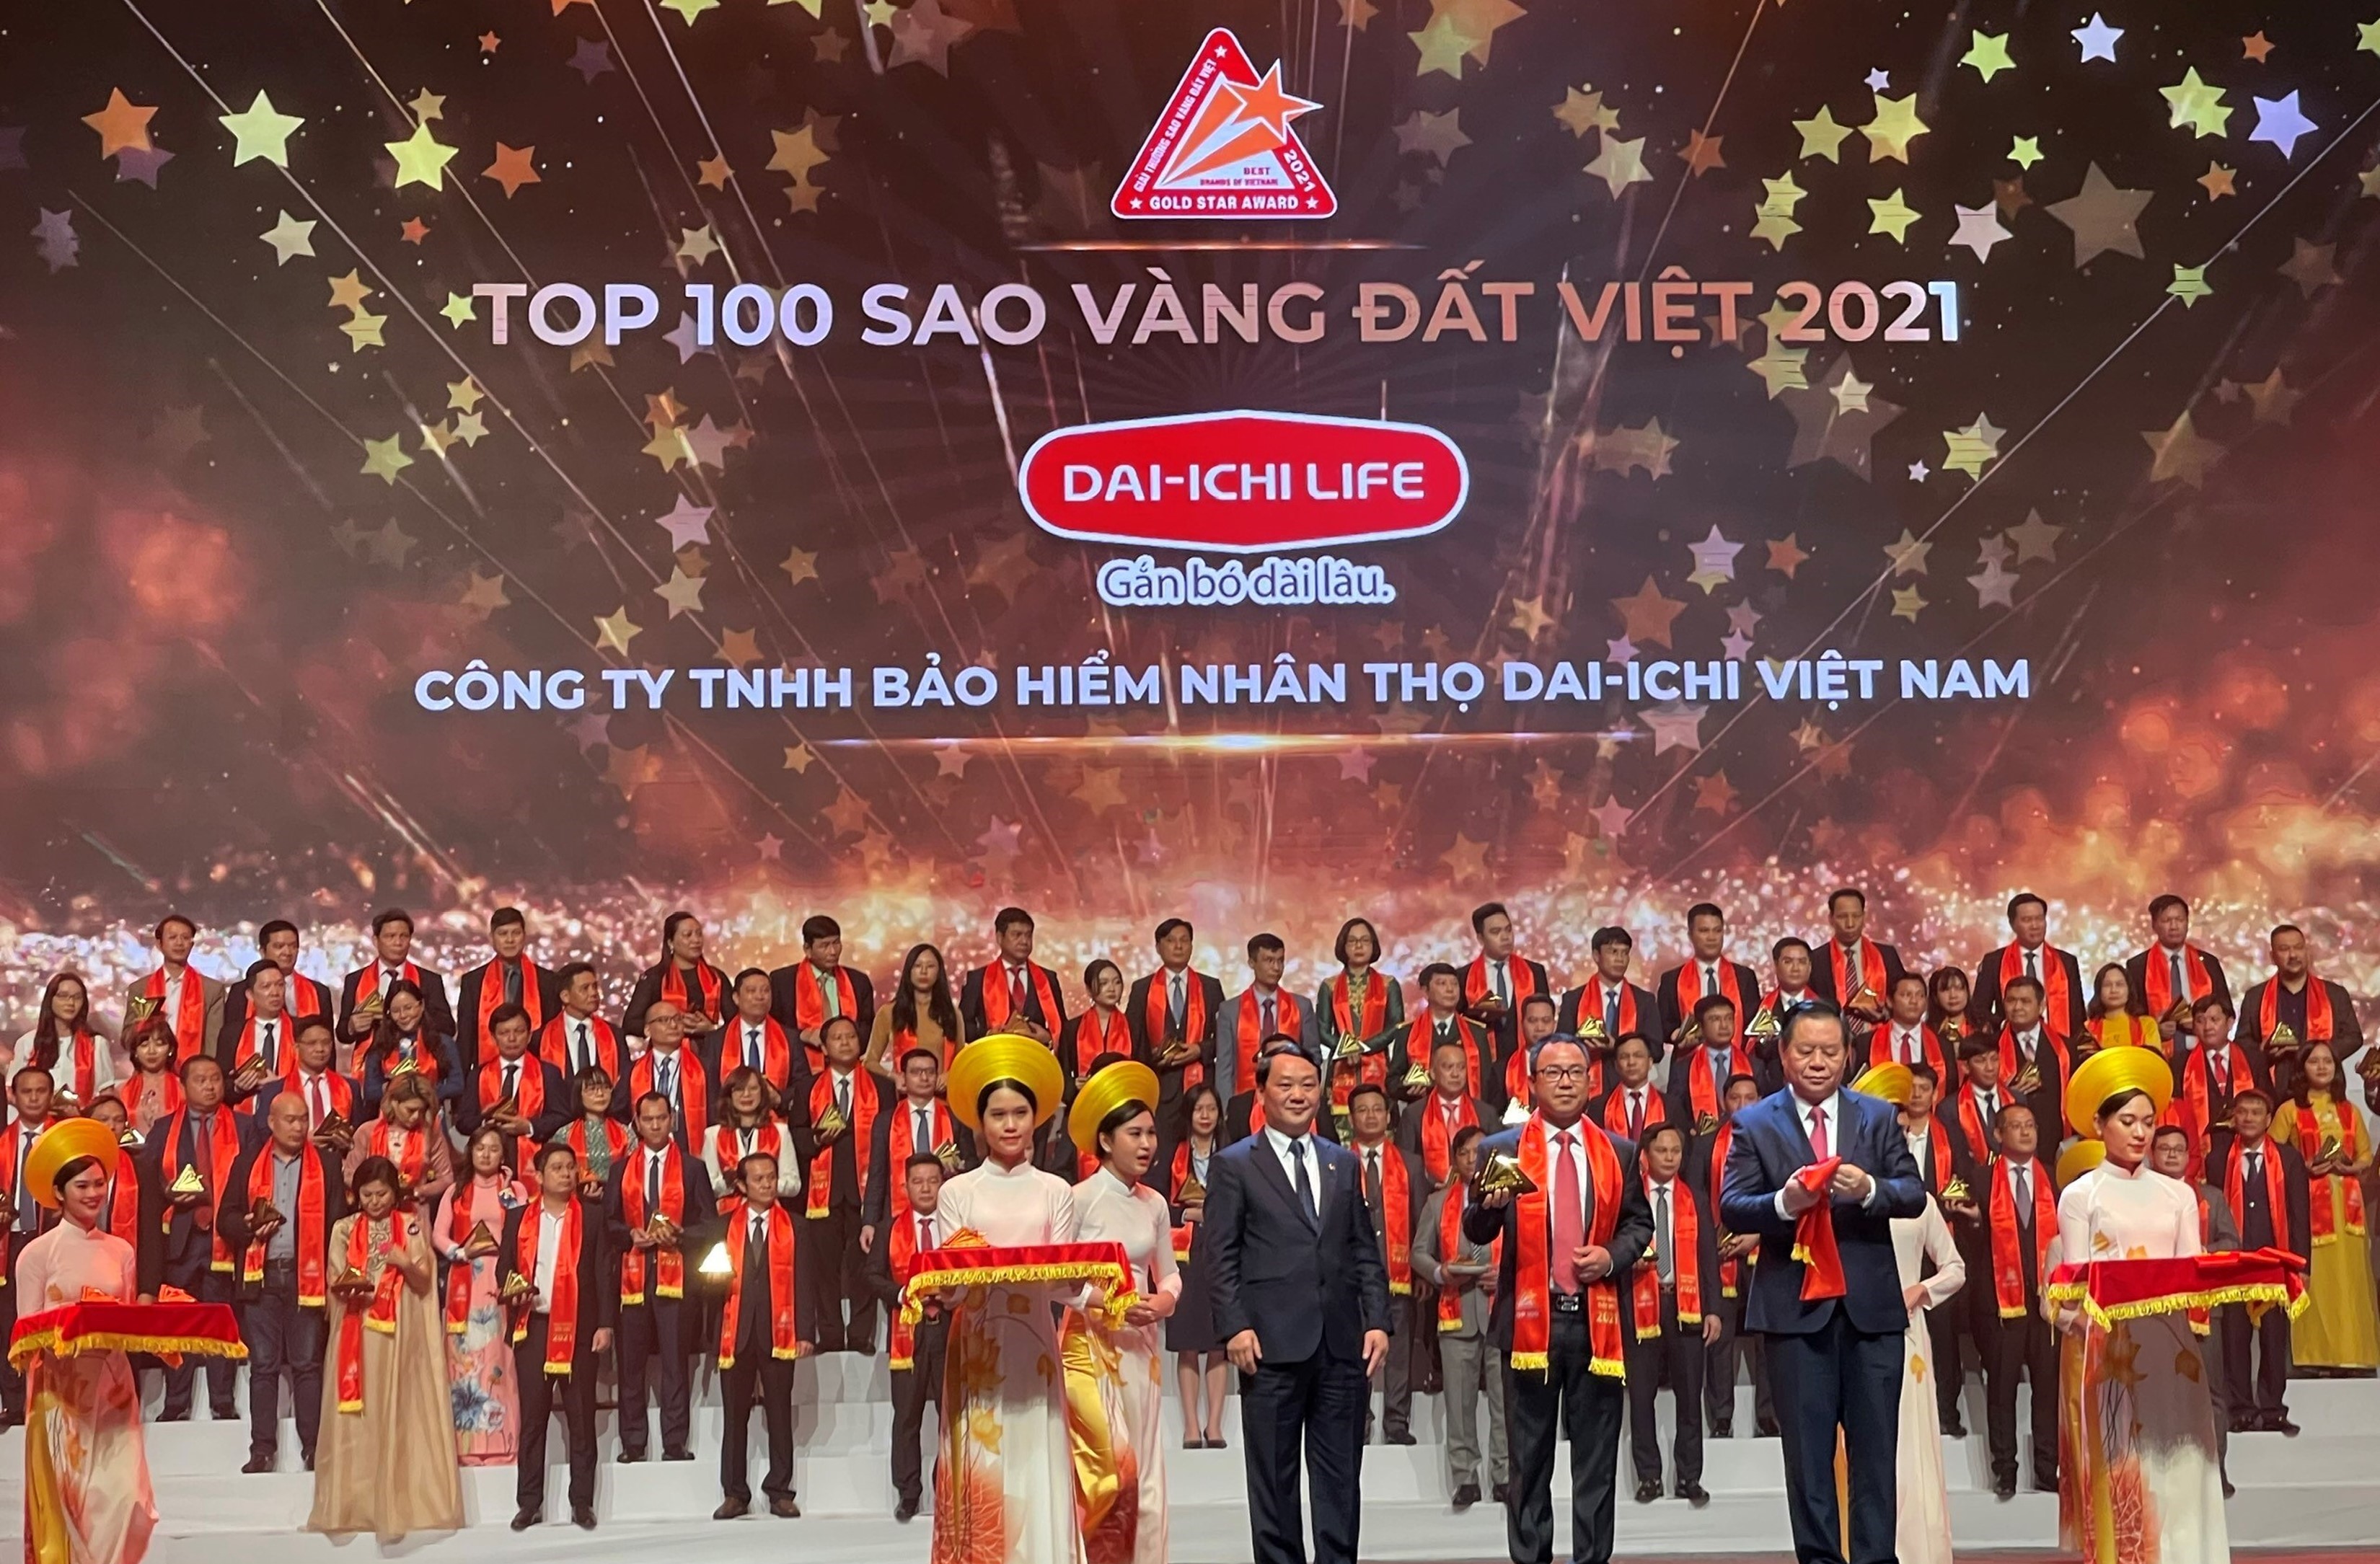 Ông Trần Thanh Tú - Phó Tổng Giám đốc Pháp lý, Pháp chế và Đối ngoại Dai-ichi Life Việt Nam nhận giải thưởng "Sao Vàng đất Việt năm 2021"